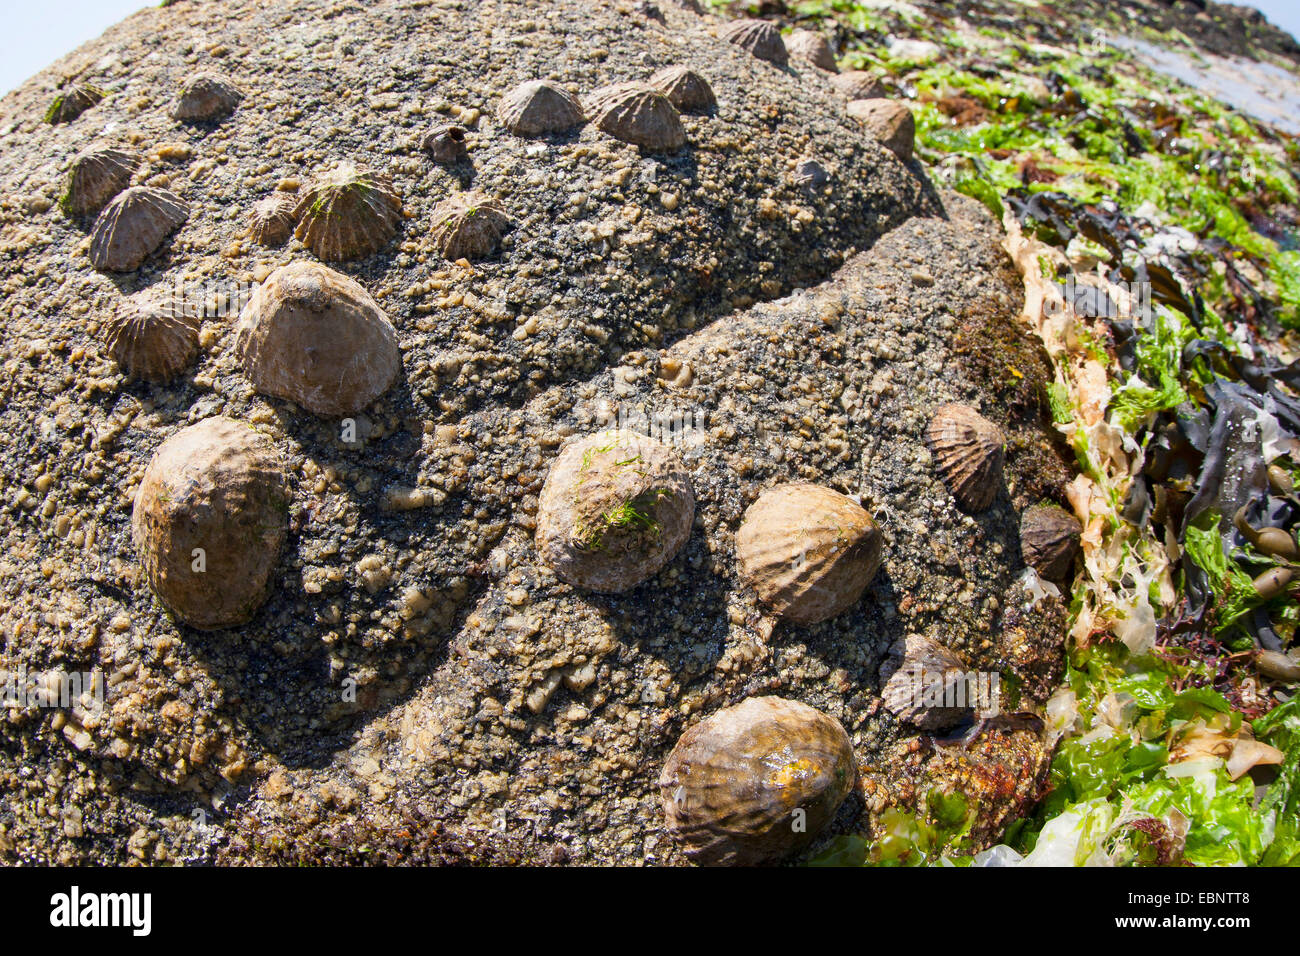 Limpet comune, Politica europea comune in materia di limpet (Patella vulgata), patelle a bassa marea su una roccia, Germania Foto Stock